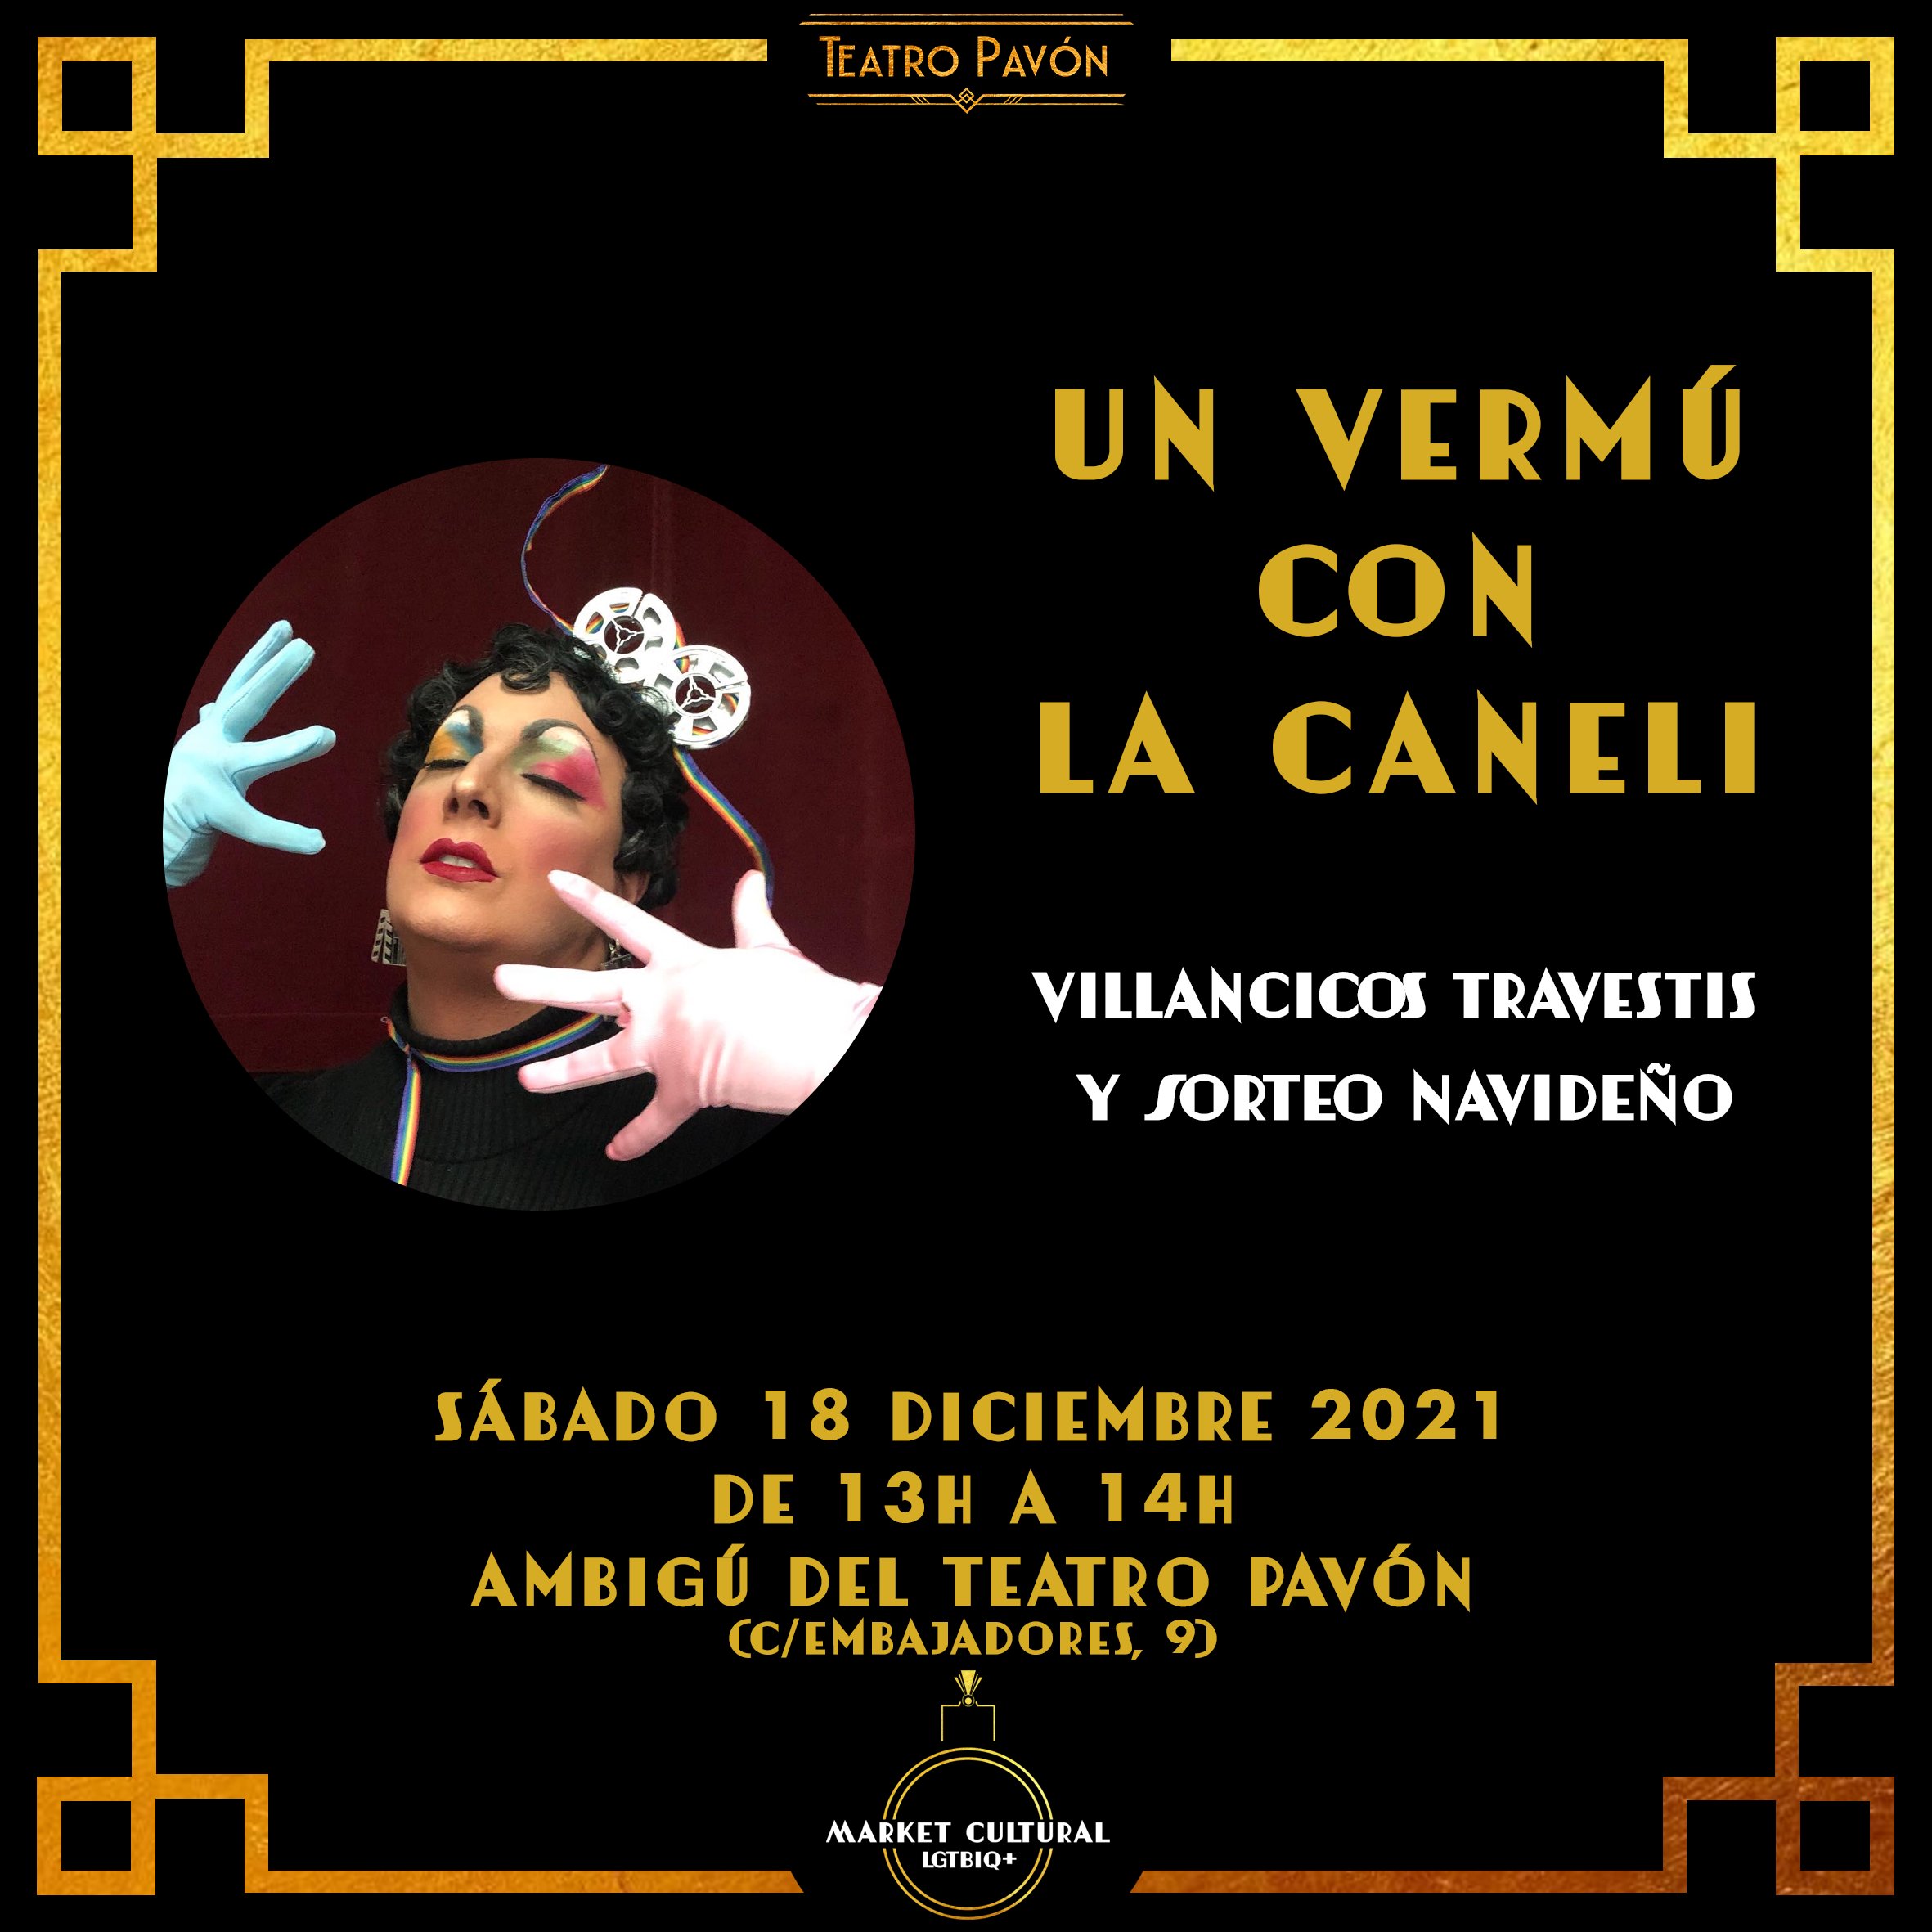 No te pierdas este sábado el Market Cultural LGTBIQ+, en el Teatro Pavón de Madrid